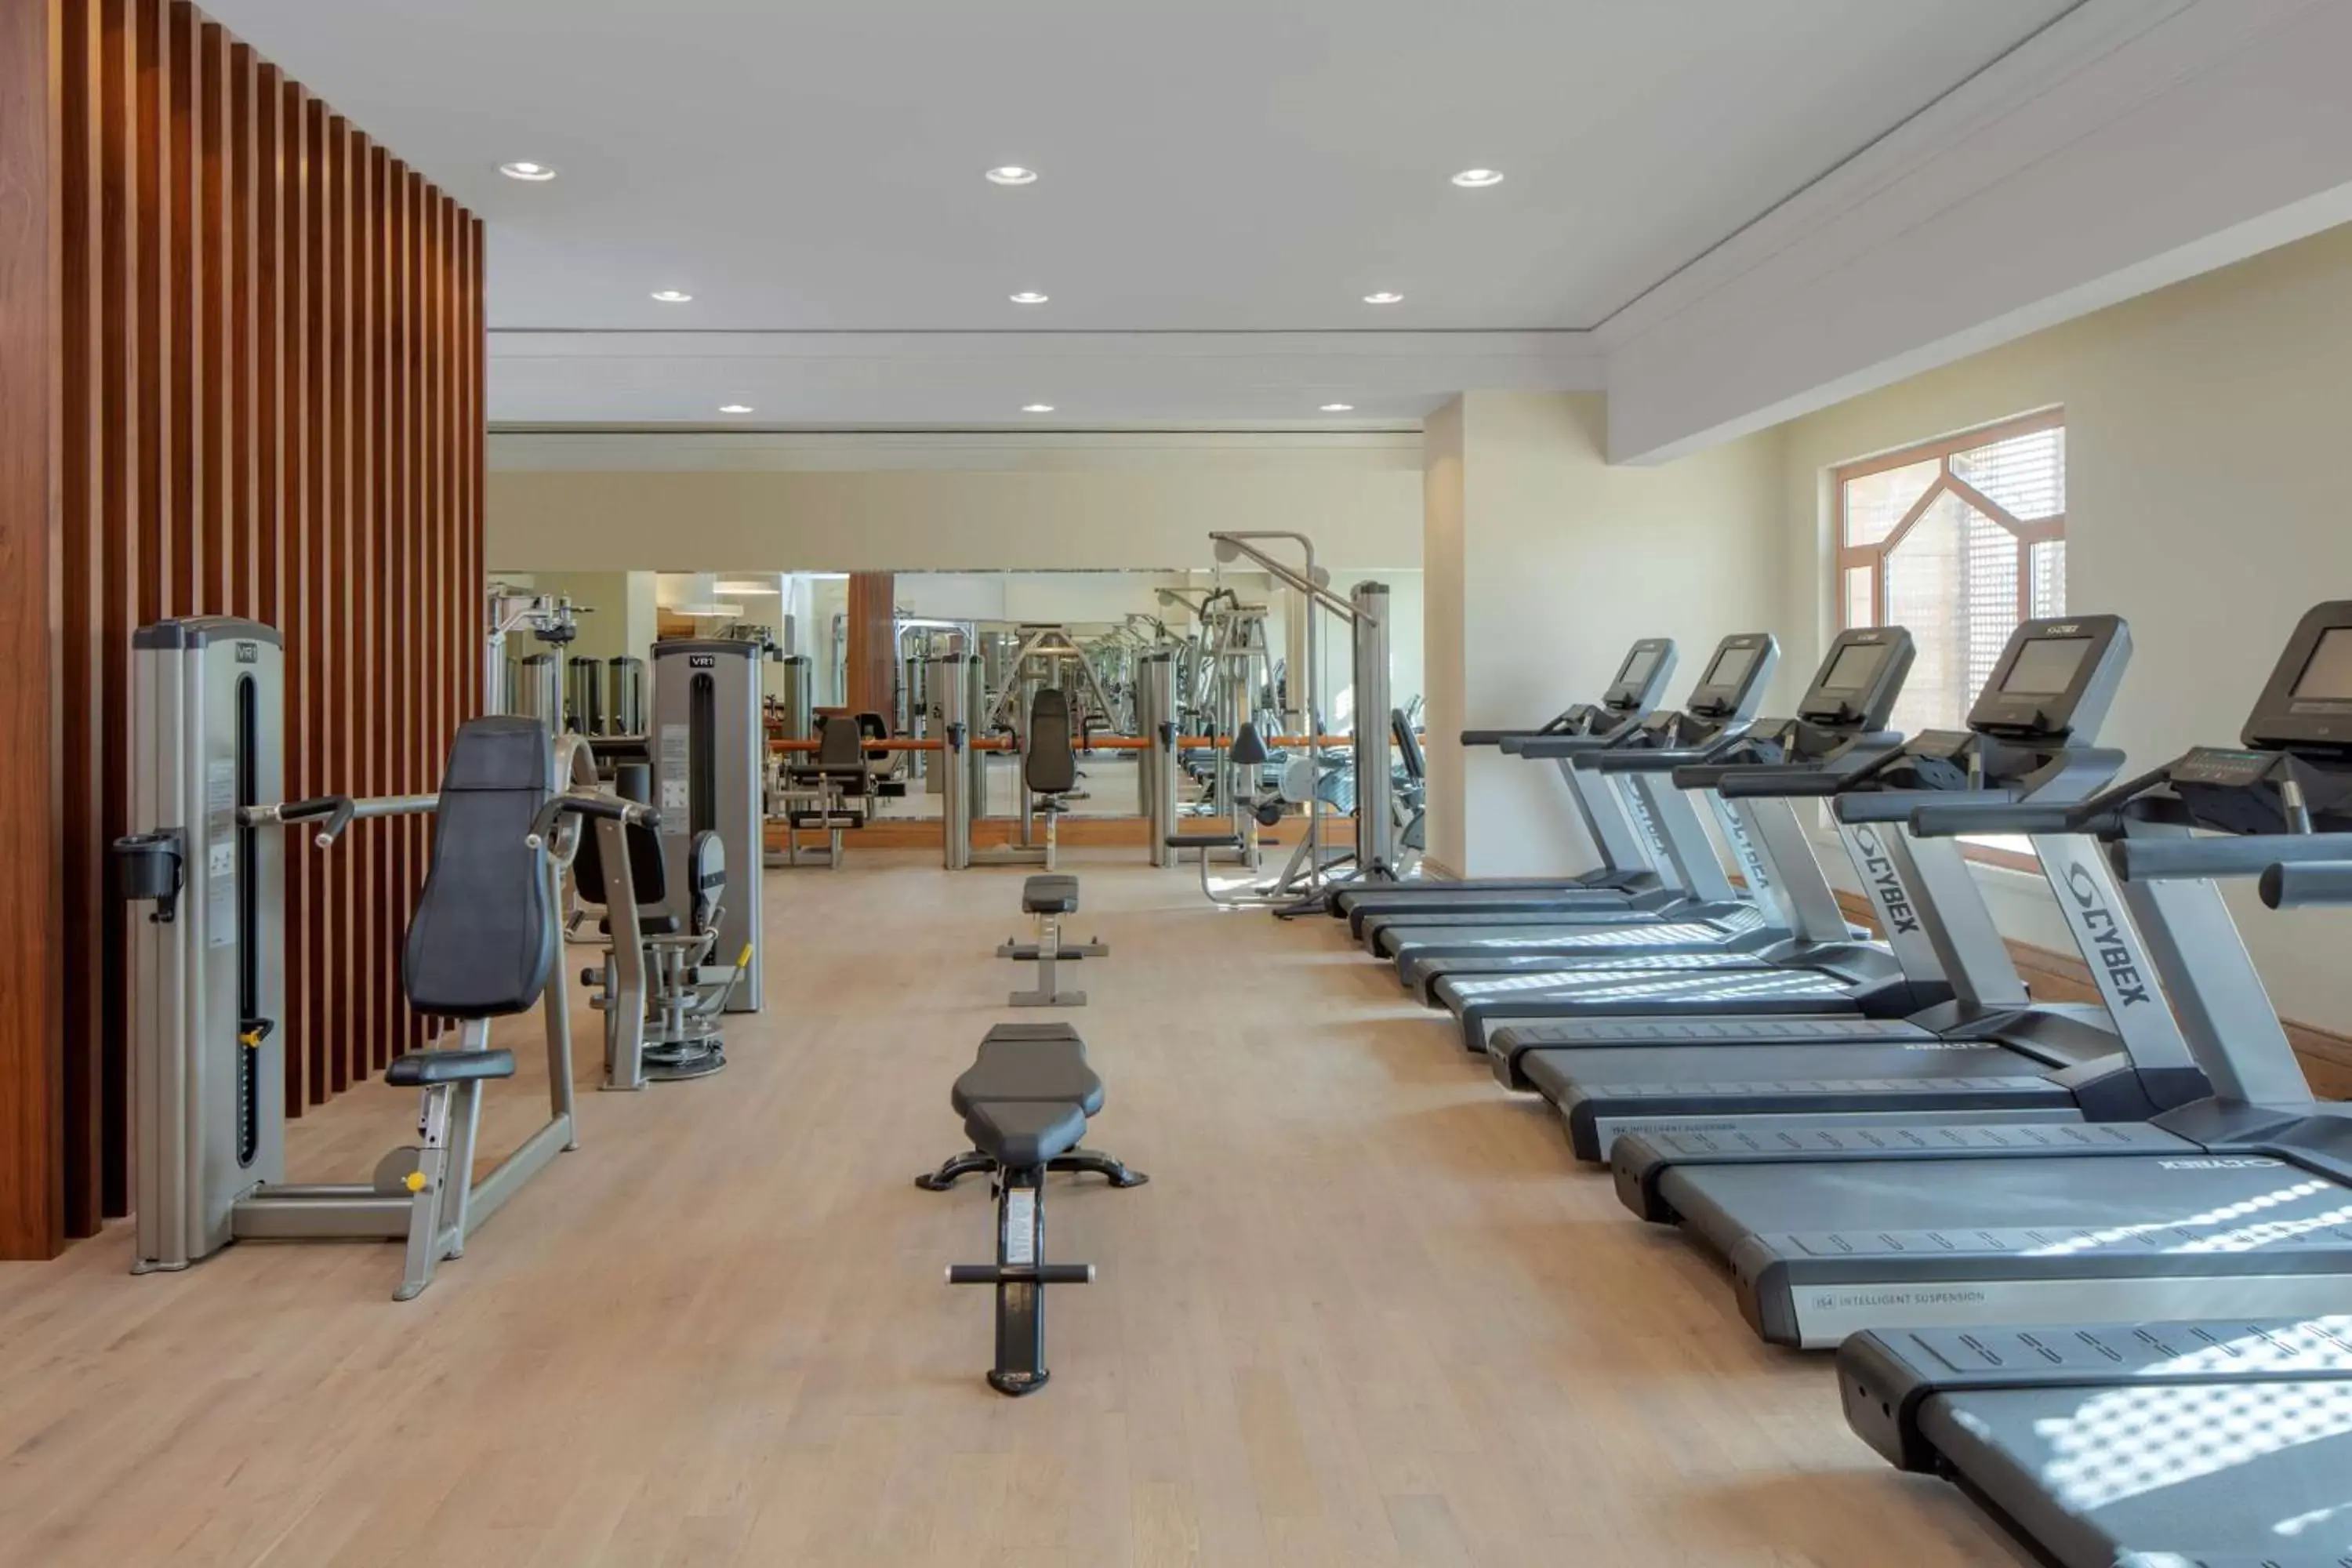 Fitness centre/facilities, Fitness Center/Facilities in Grand Hyatt Amman